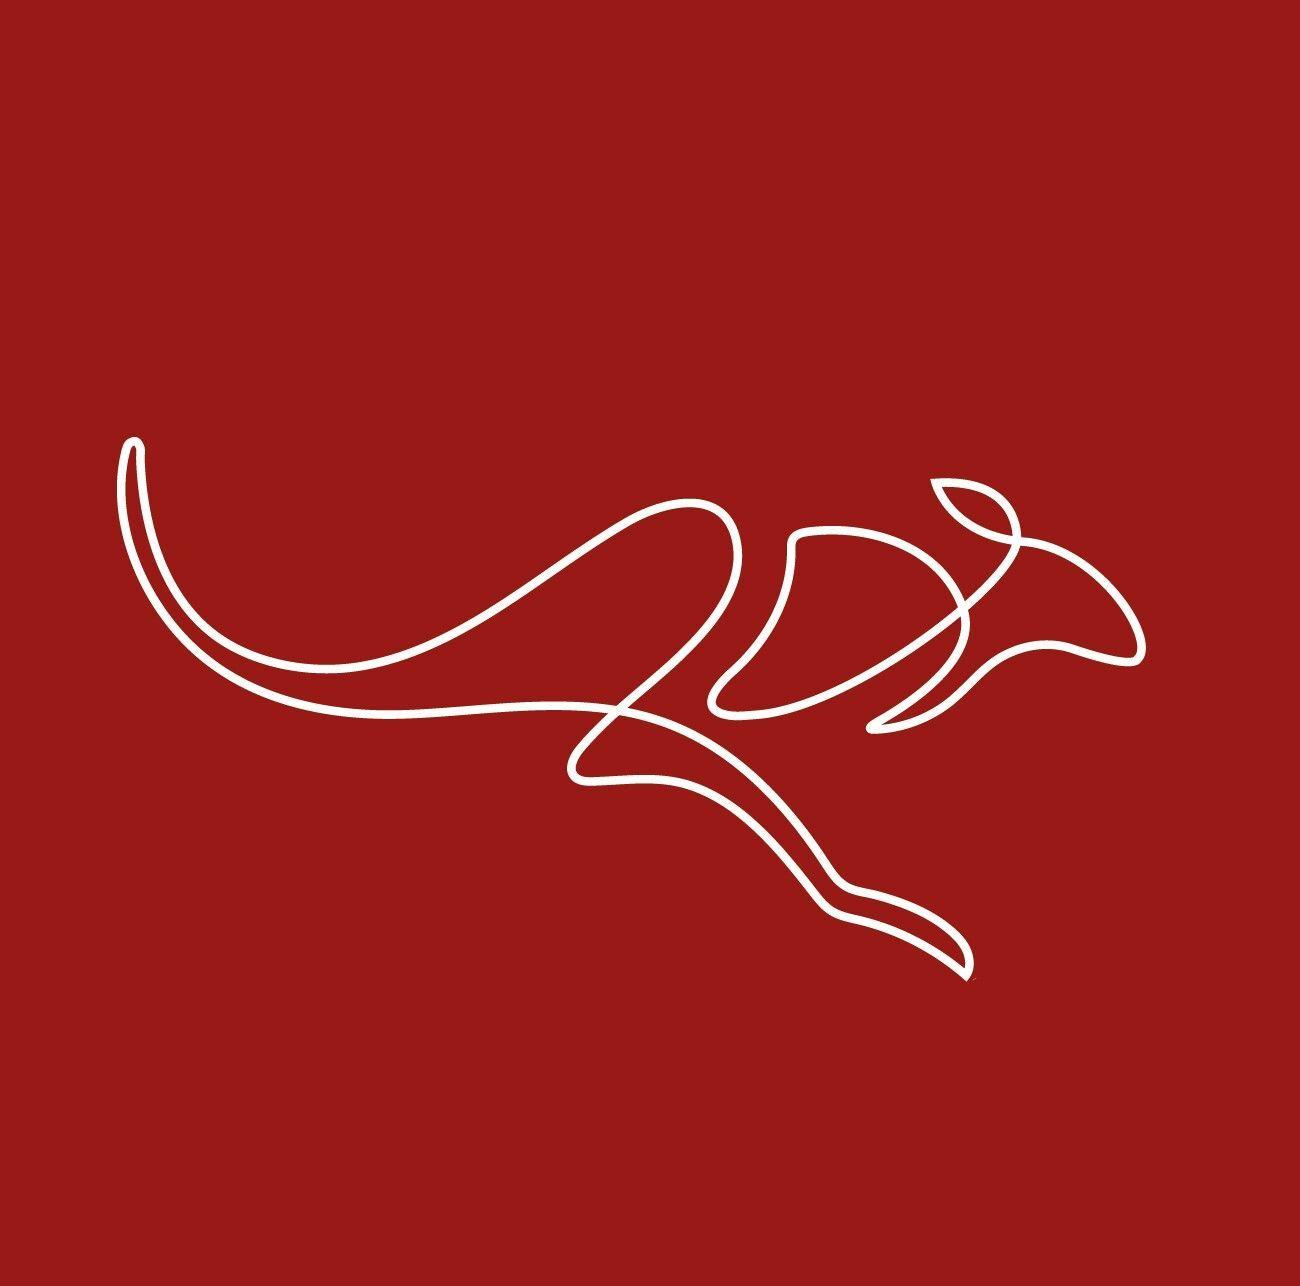 Austin College Kangaroos Logo - Kangaroo | Corporate Identity | Pinterest | Australian tattoo ...